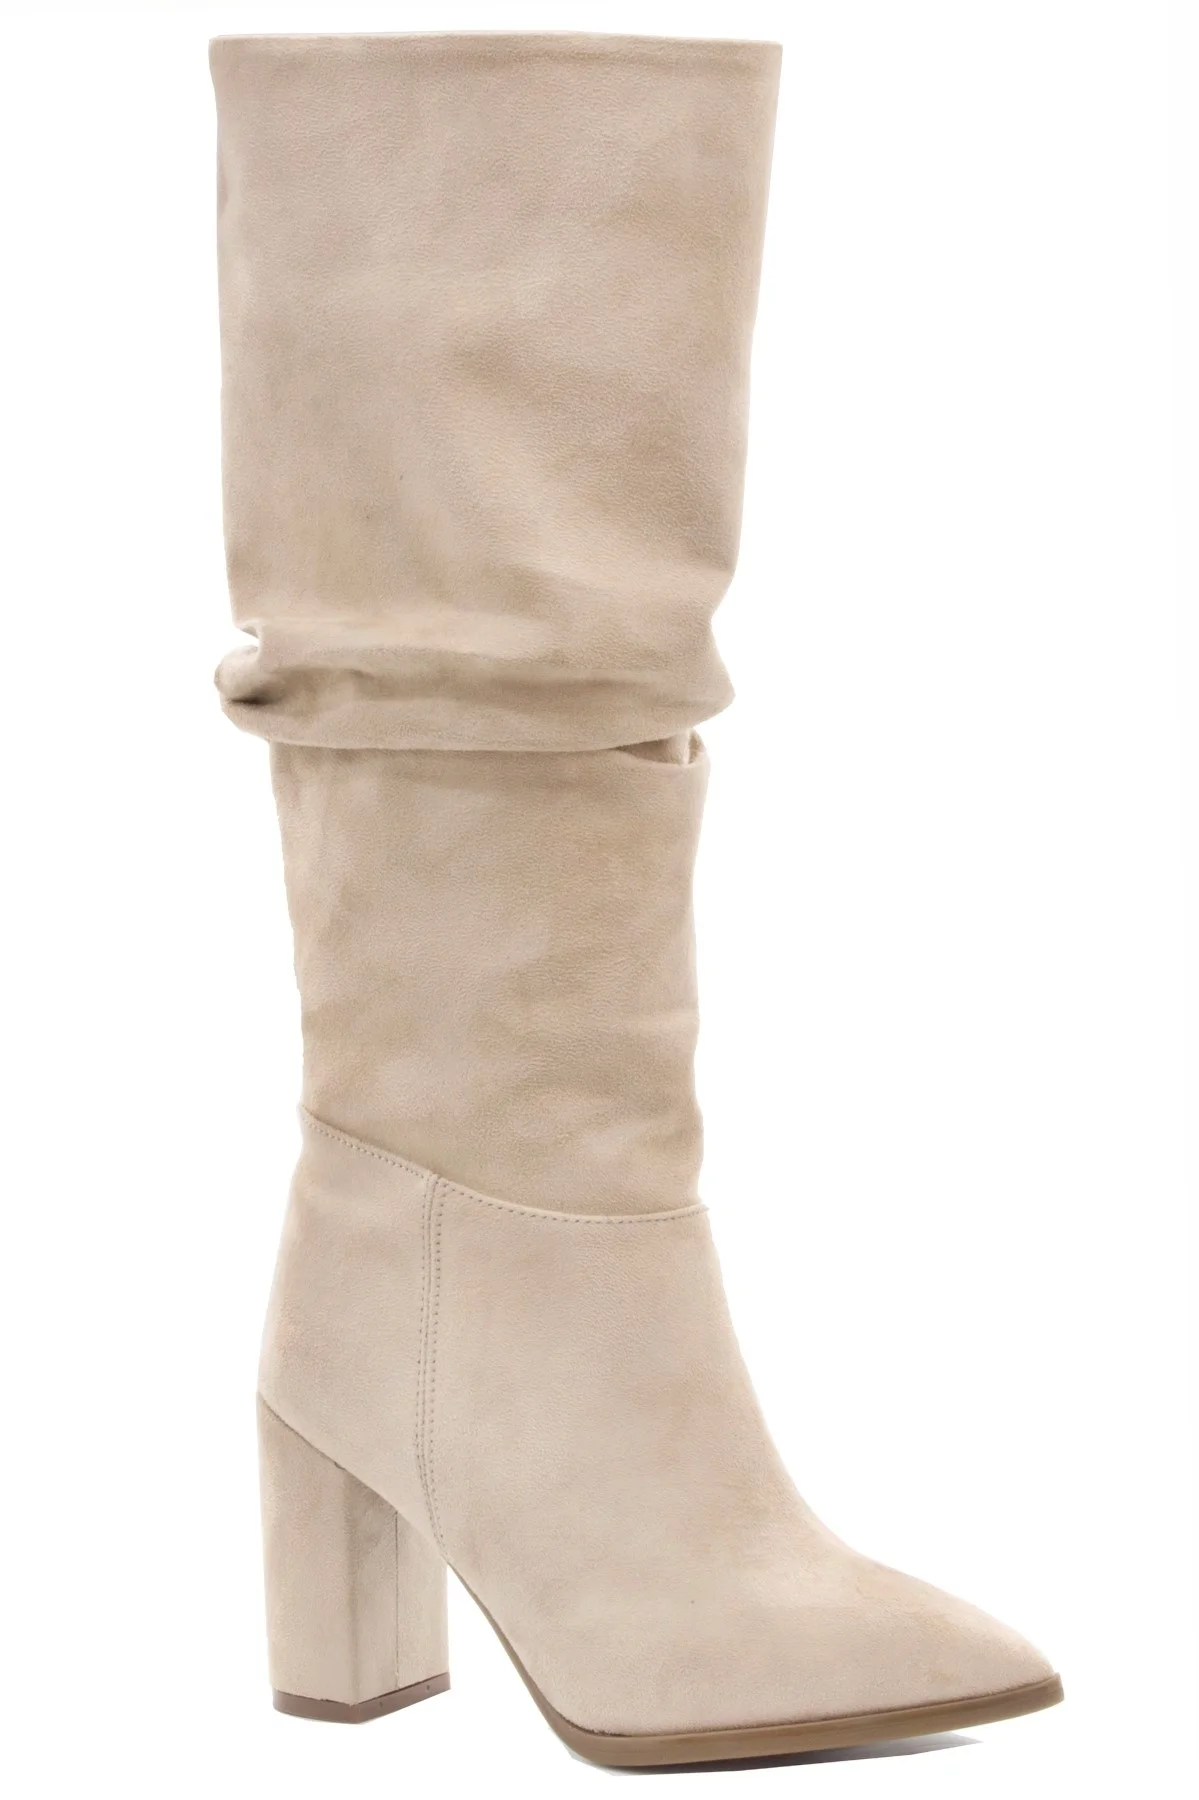 

Gedikpaşalı Hll 22 K 888 Beige 2022 Winter New Season Lady Heels Boot Tights Mini Skirt Casual Light Use Hiking stylish Street Styl